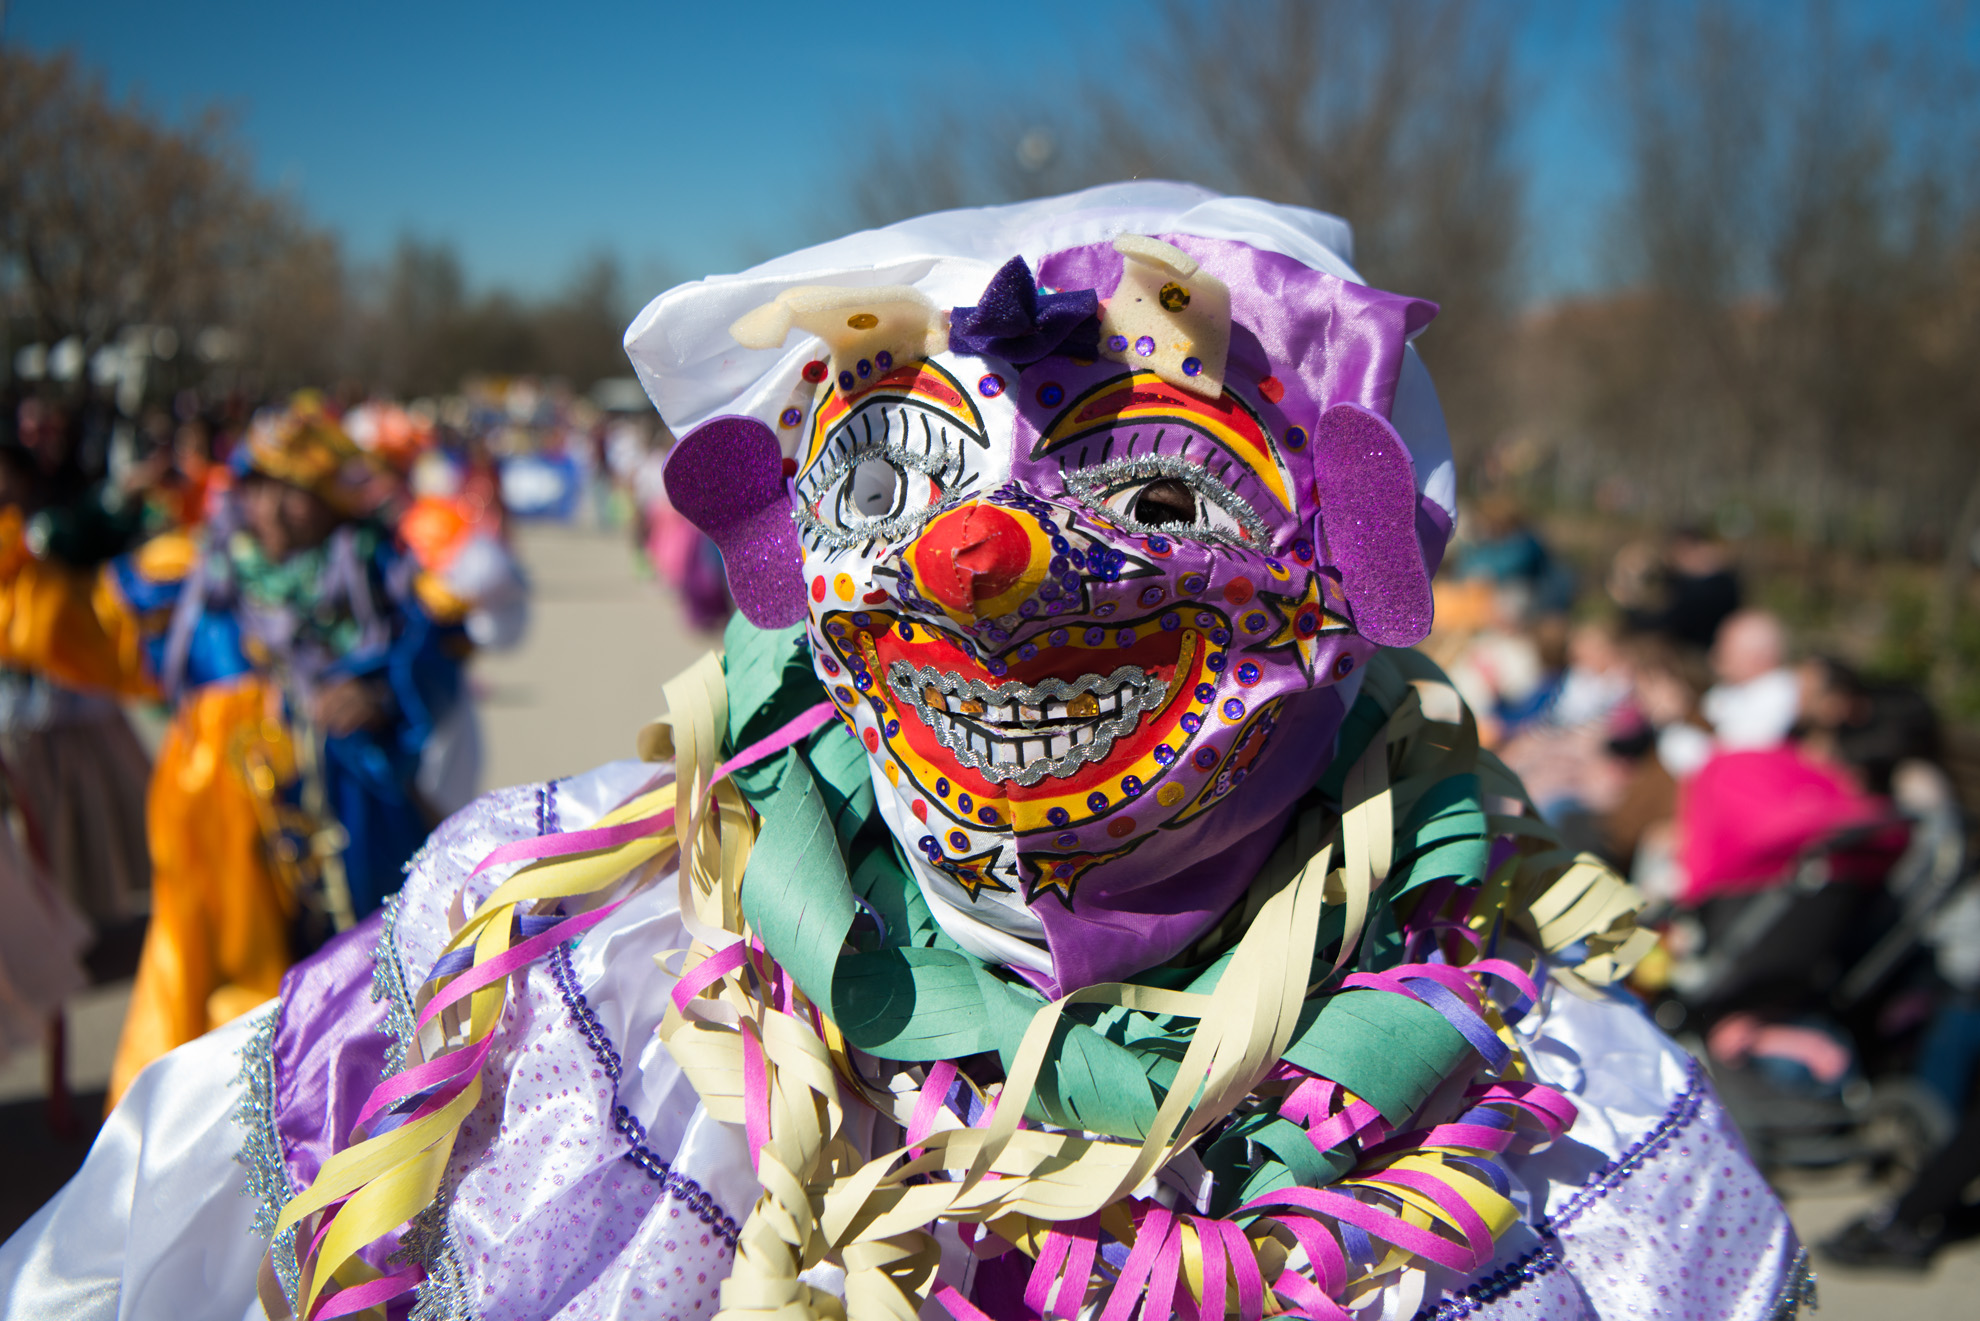 Payaso boliviano durante el desfile carnavalesco en Madrid Río.